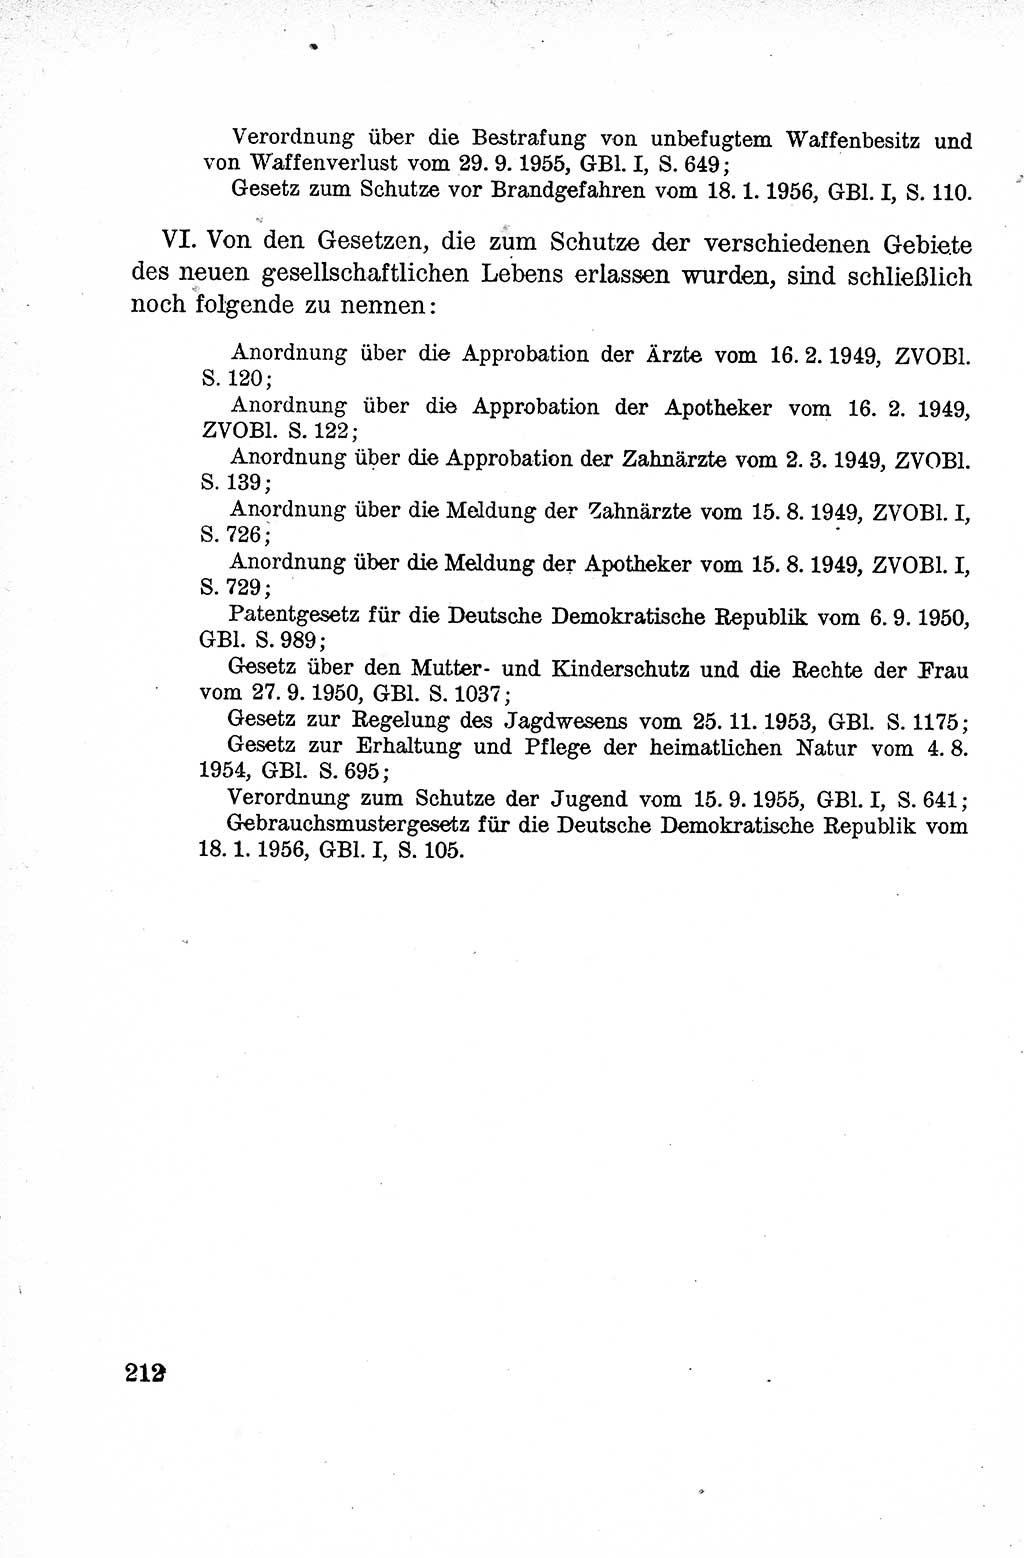 Lehrbuch des Strafrechts der Deutschen Demokratischen Republik (DDR), Allgemeiner Teil 1959, Seite 212 (Lb. Strafr. DDR AT 1959, S. 212)